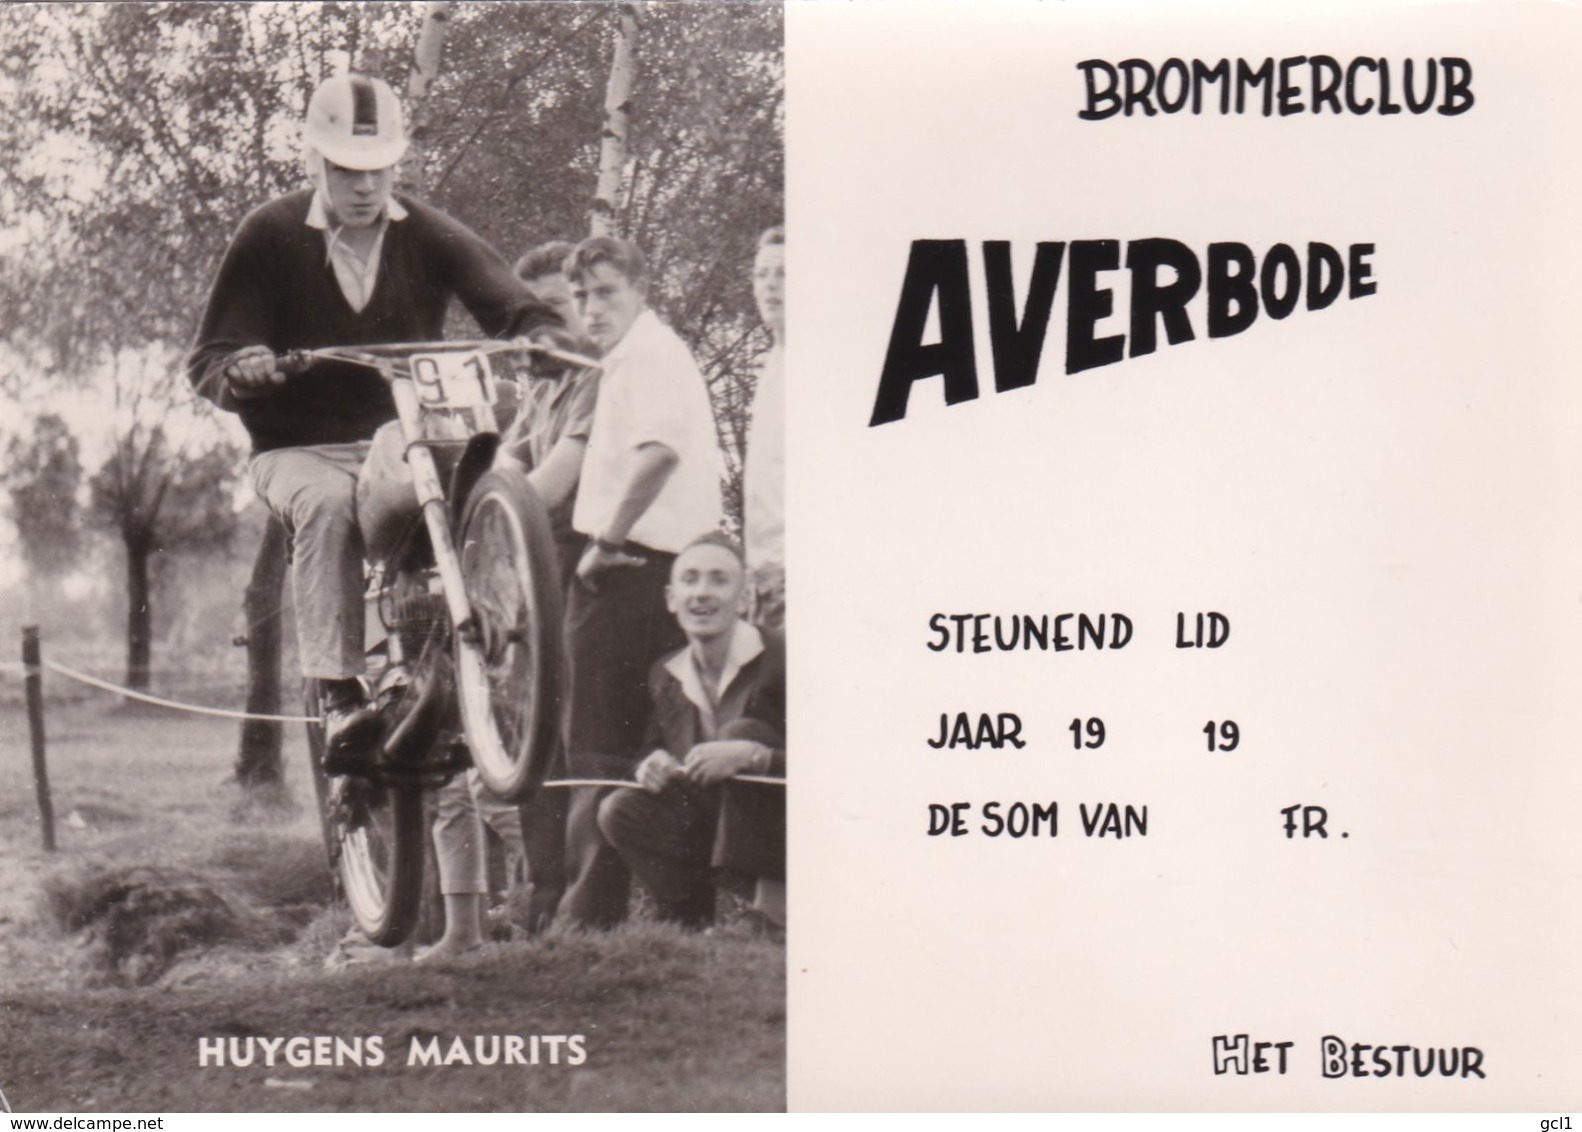 Averbode - Brommerclub - Huygens Maurits - Scherpenheuvel-Zichem